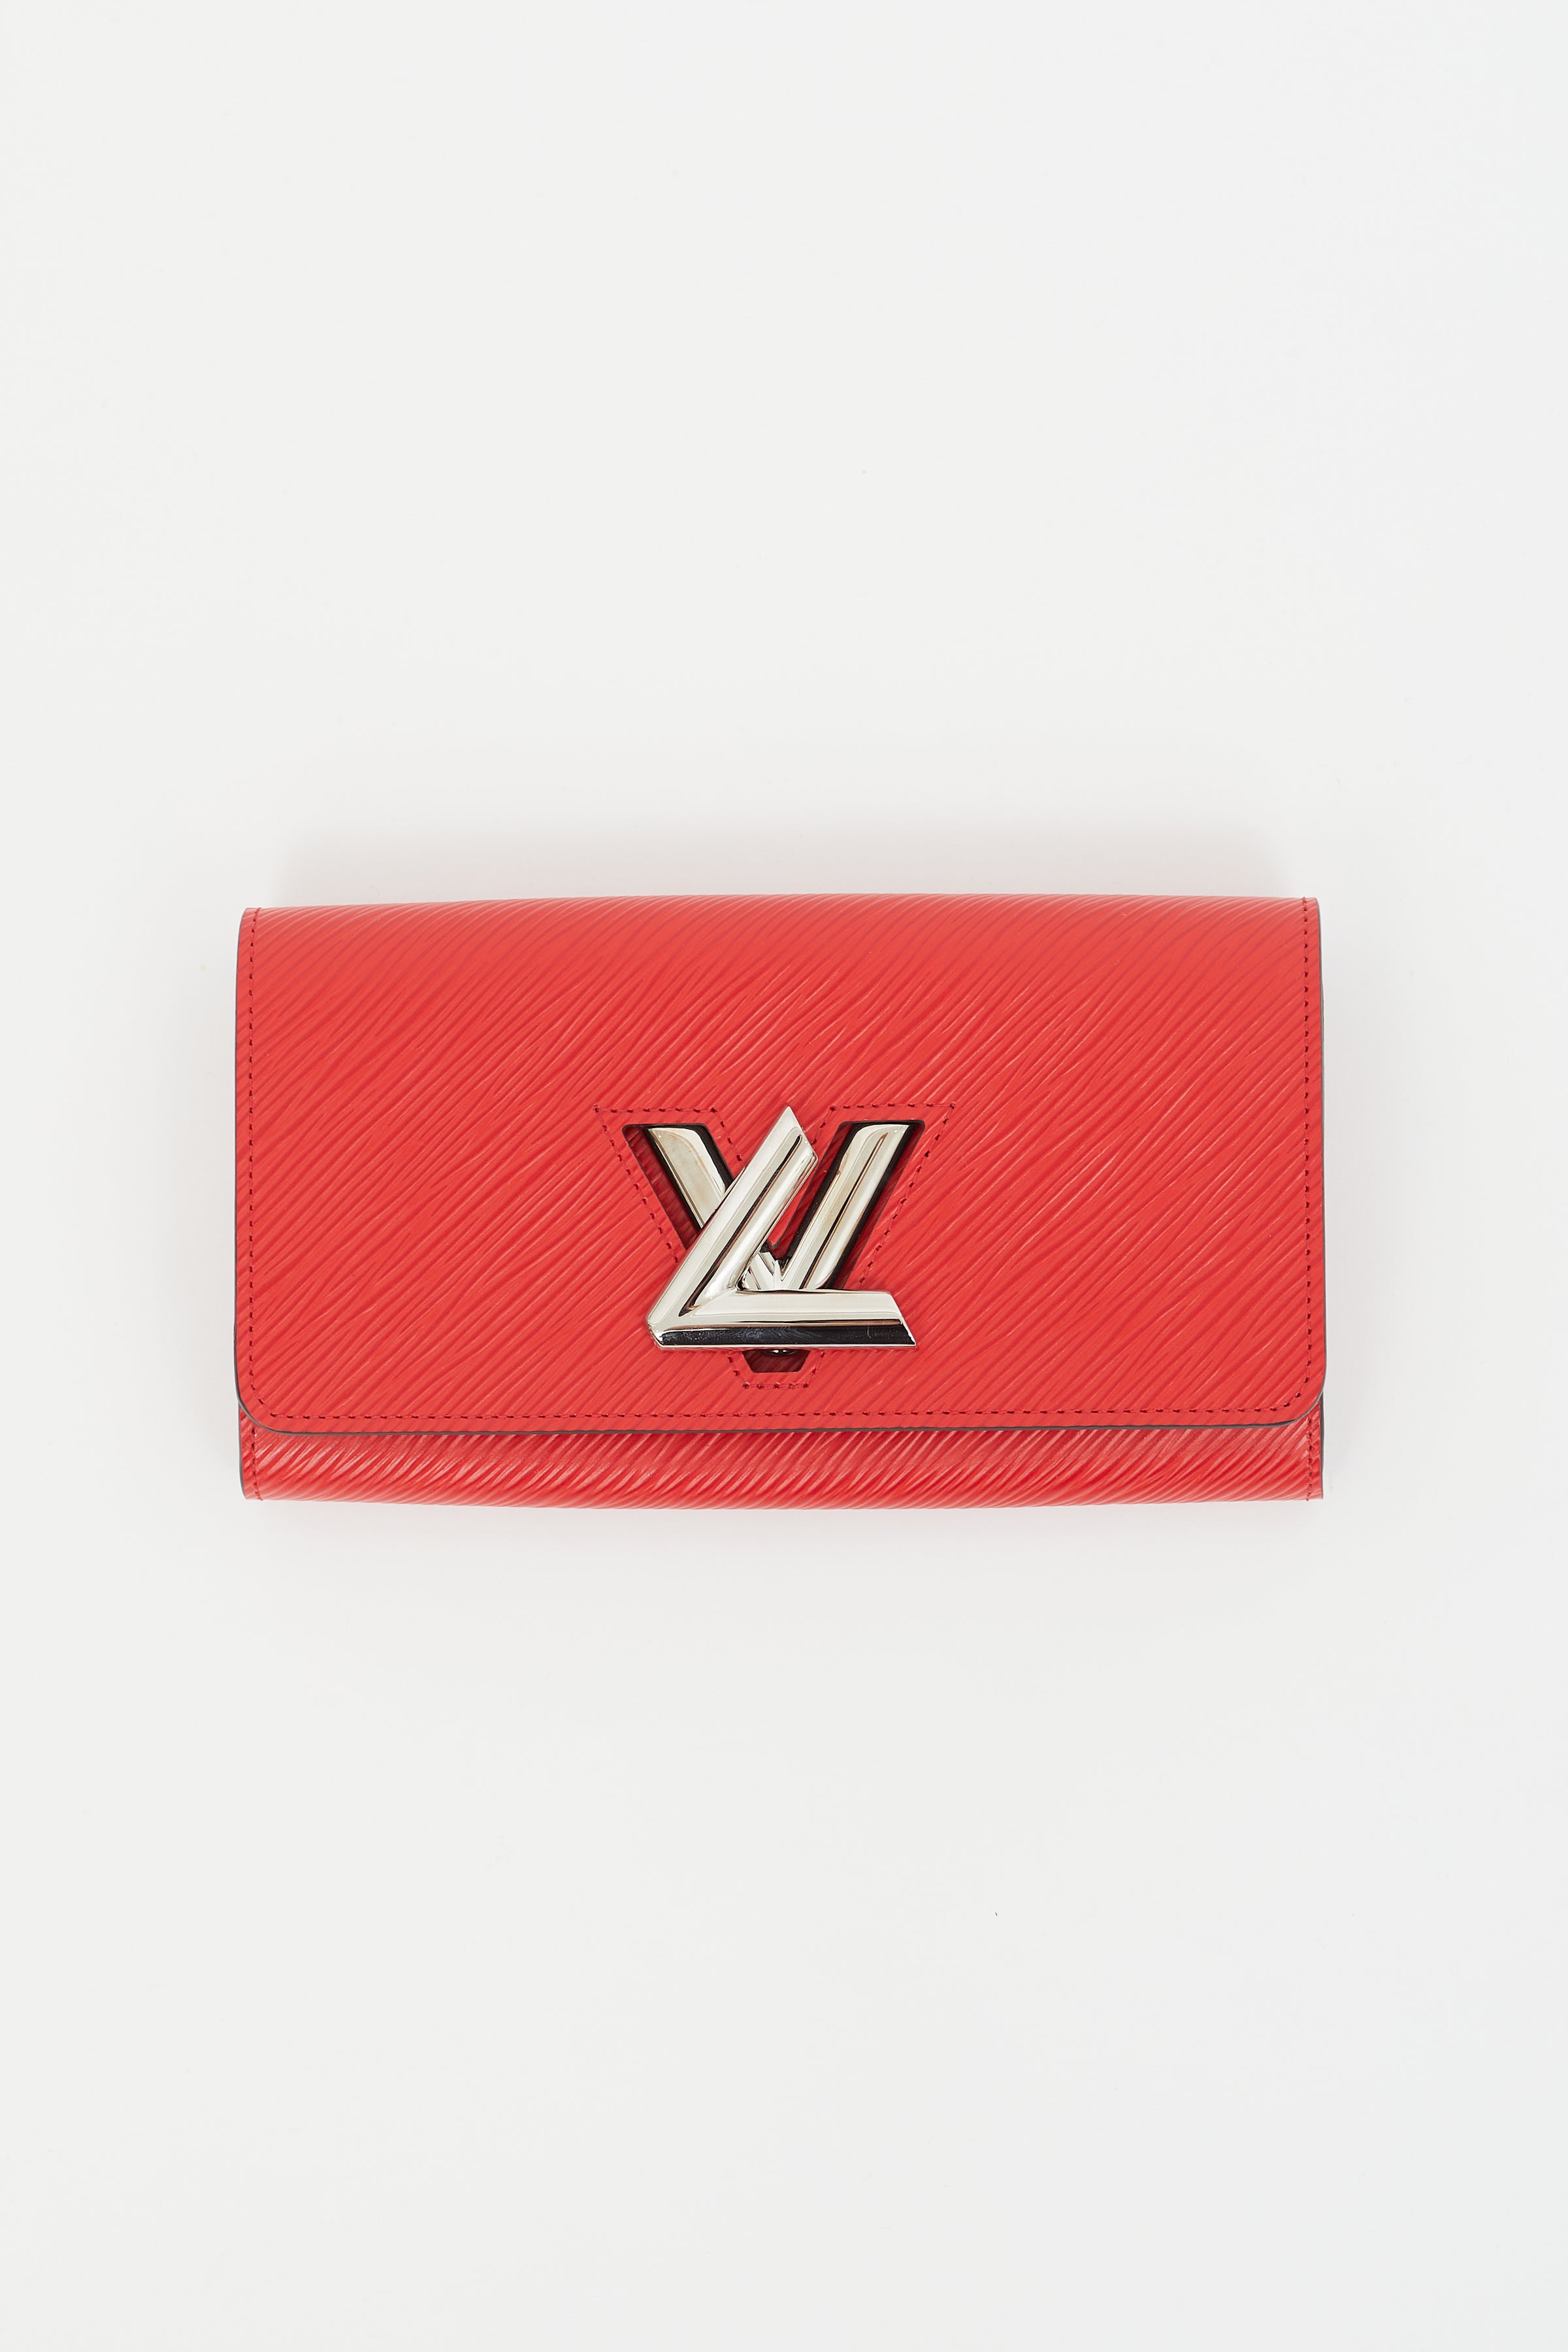 Shop Louis Vuitton TWIST red